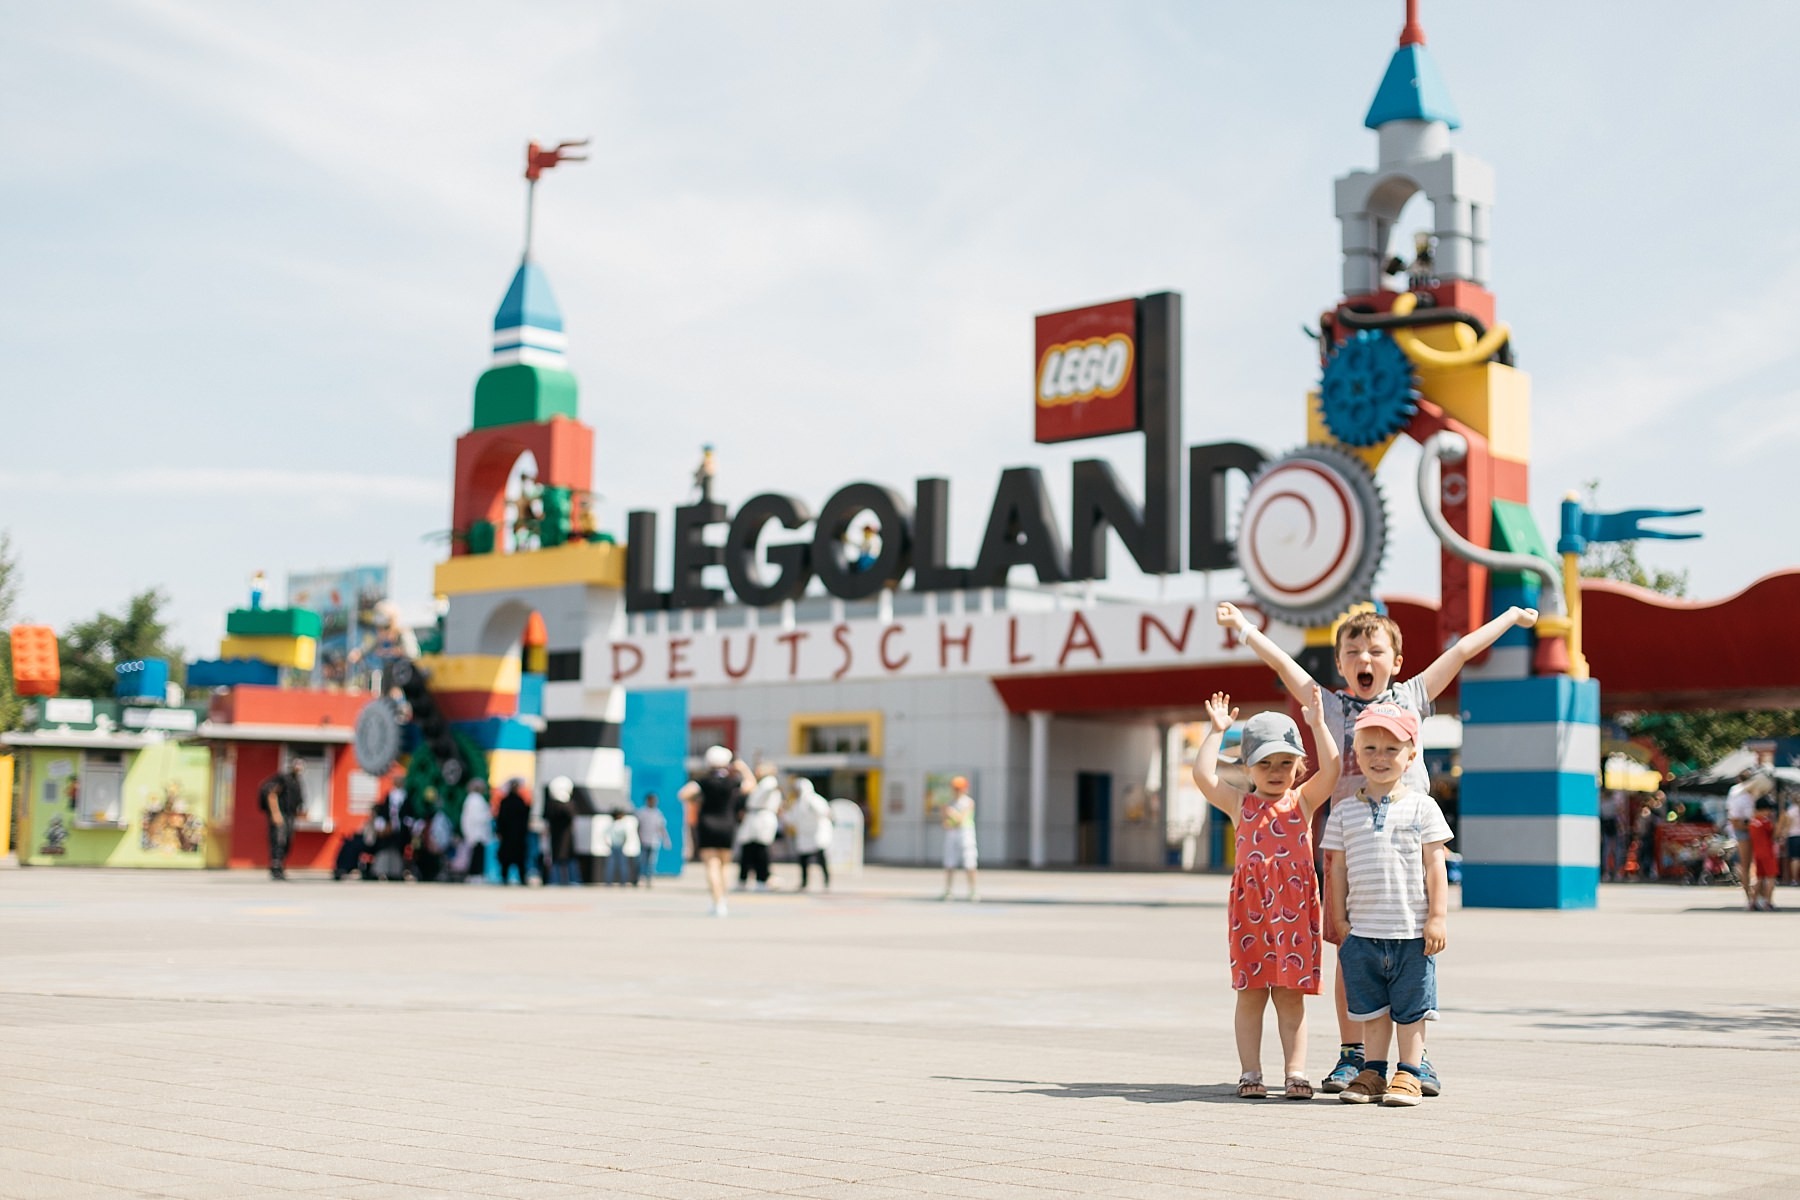 Legoland - 57 millions de briques Lego 1